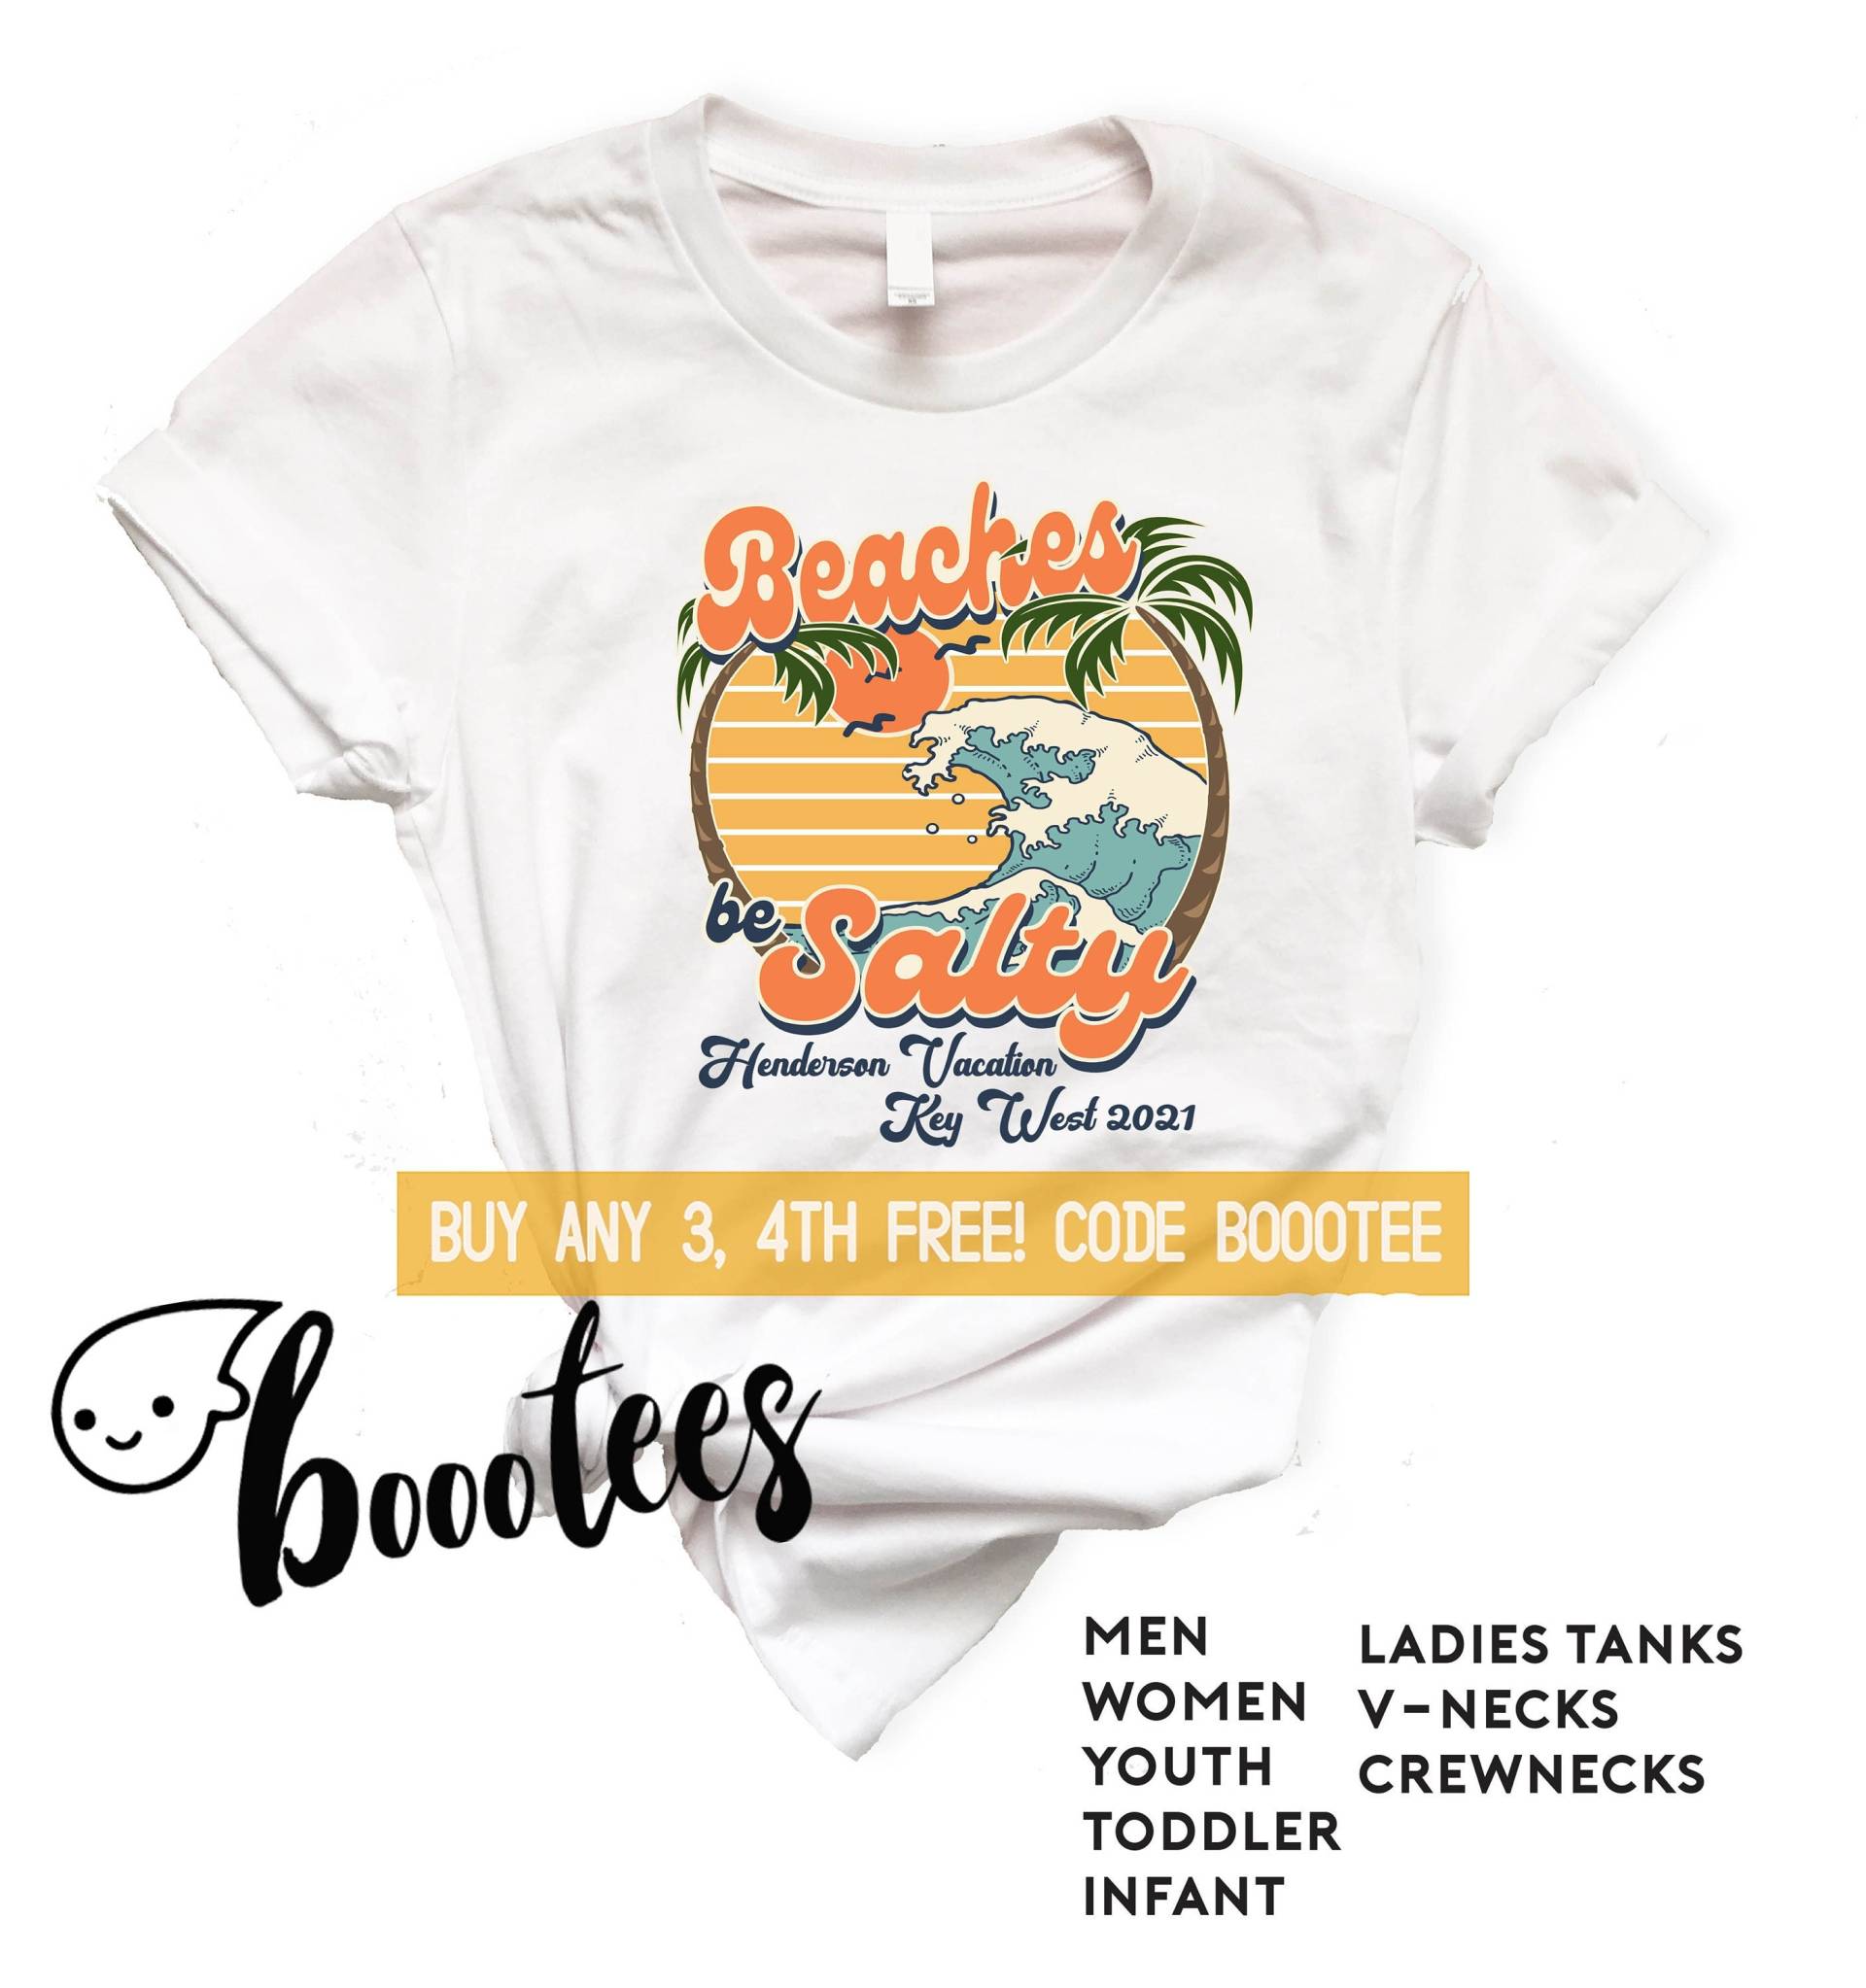 Benutzerdefinierte Urlaub Shirts Passende Familie Strand T-Shirt Männer Kinder Frauen Junge Mädchen Kleinkind Kind Tank Top V-Ausschnitt Cruise von BoooTees